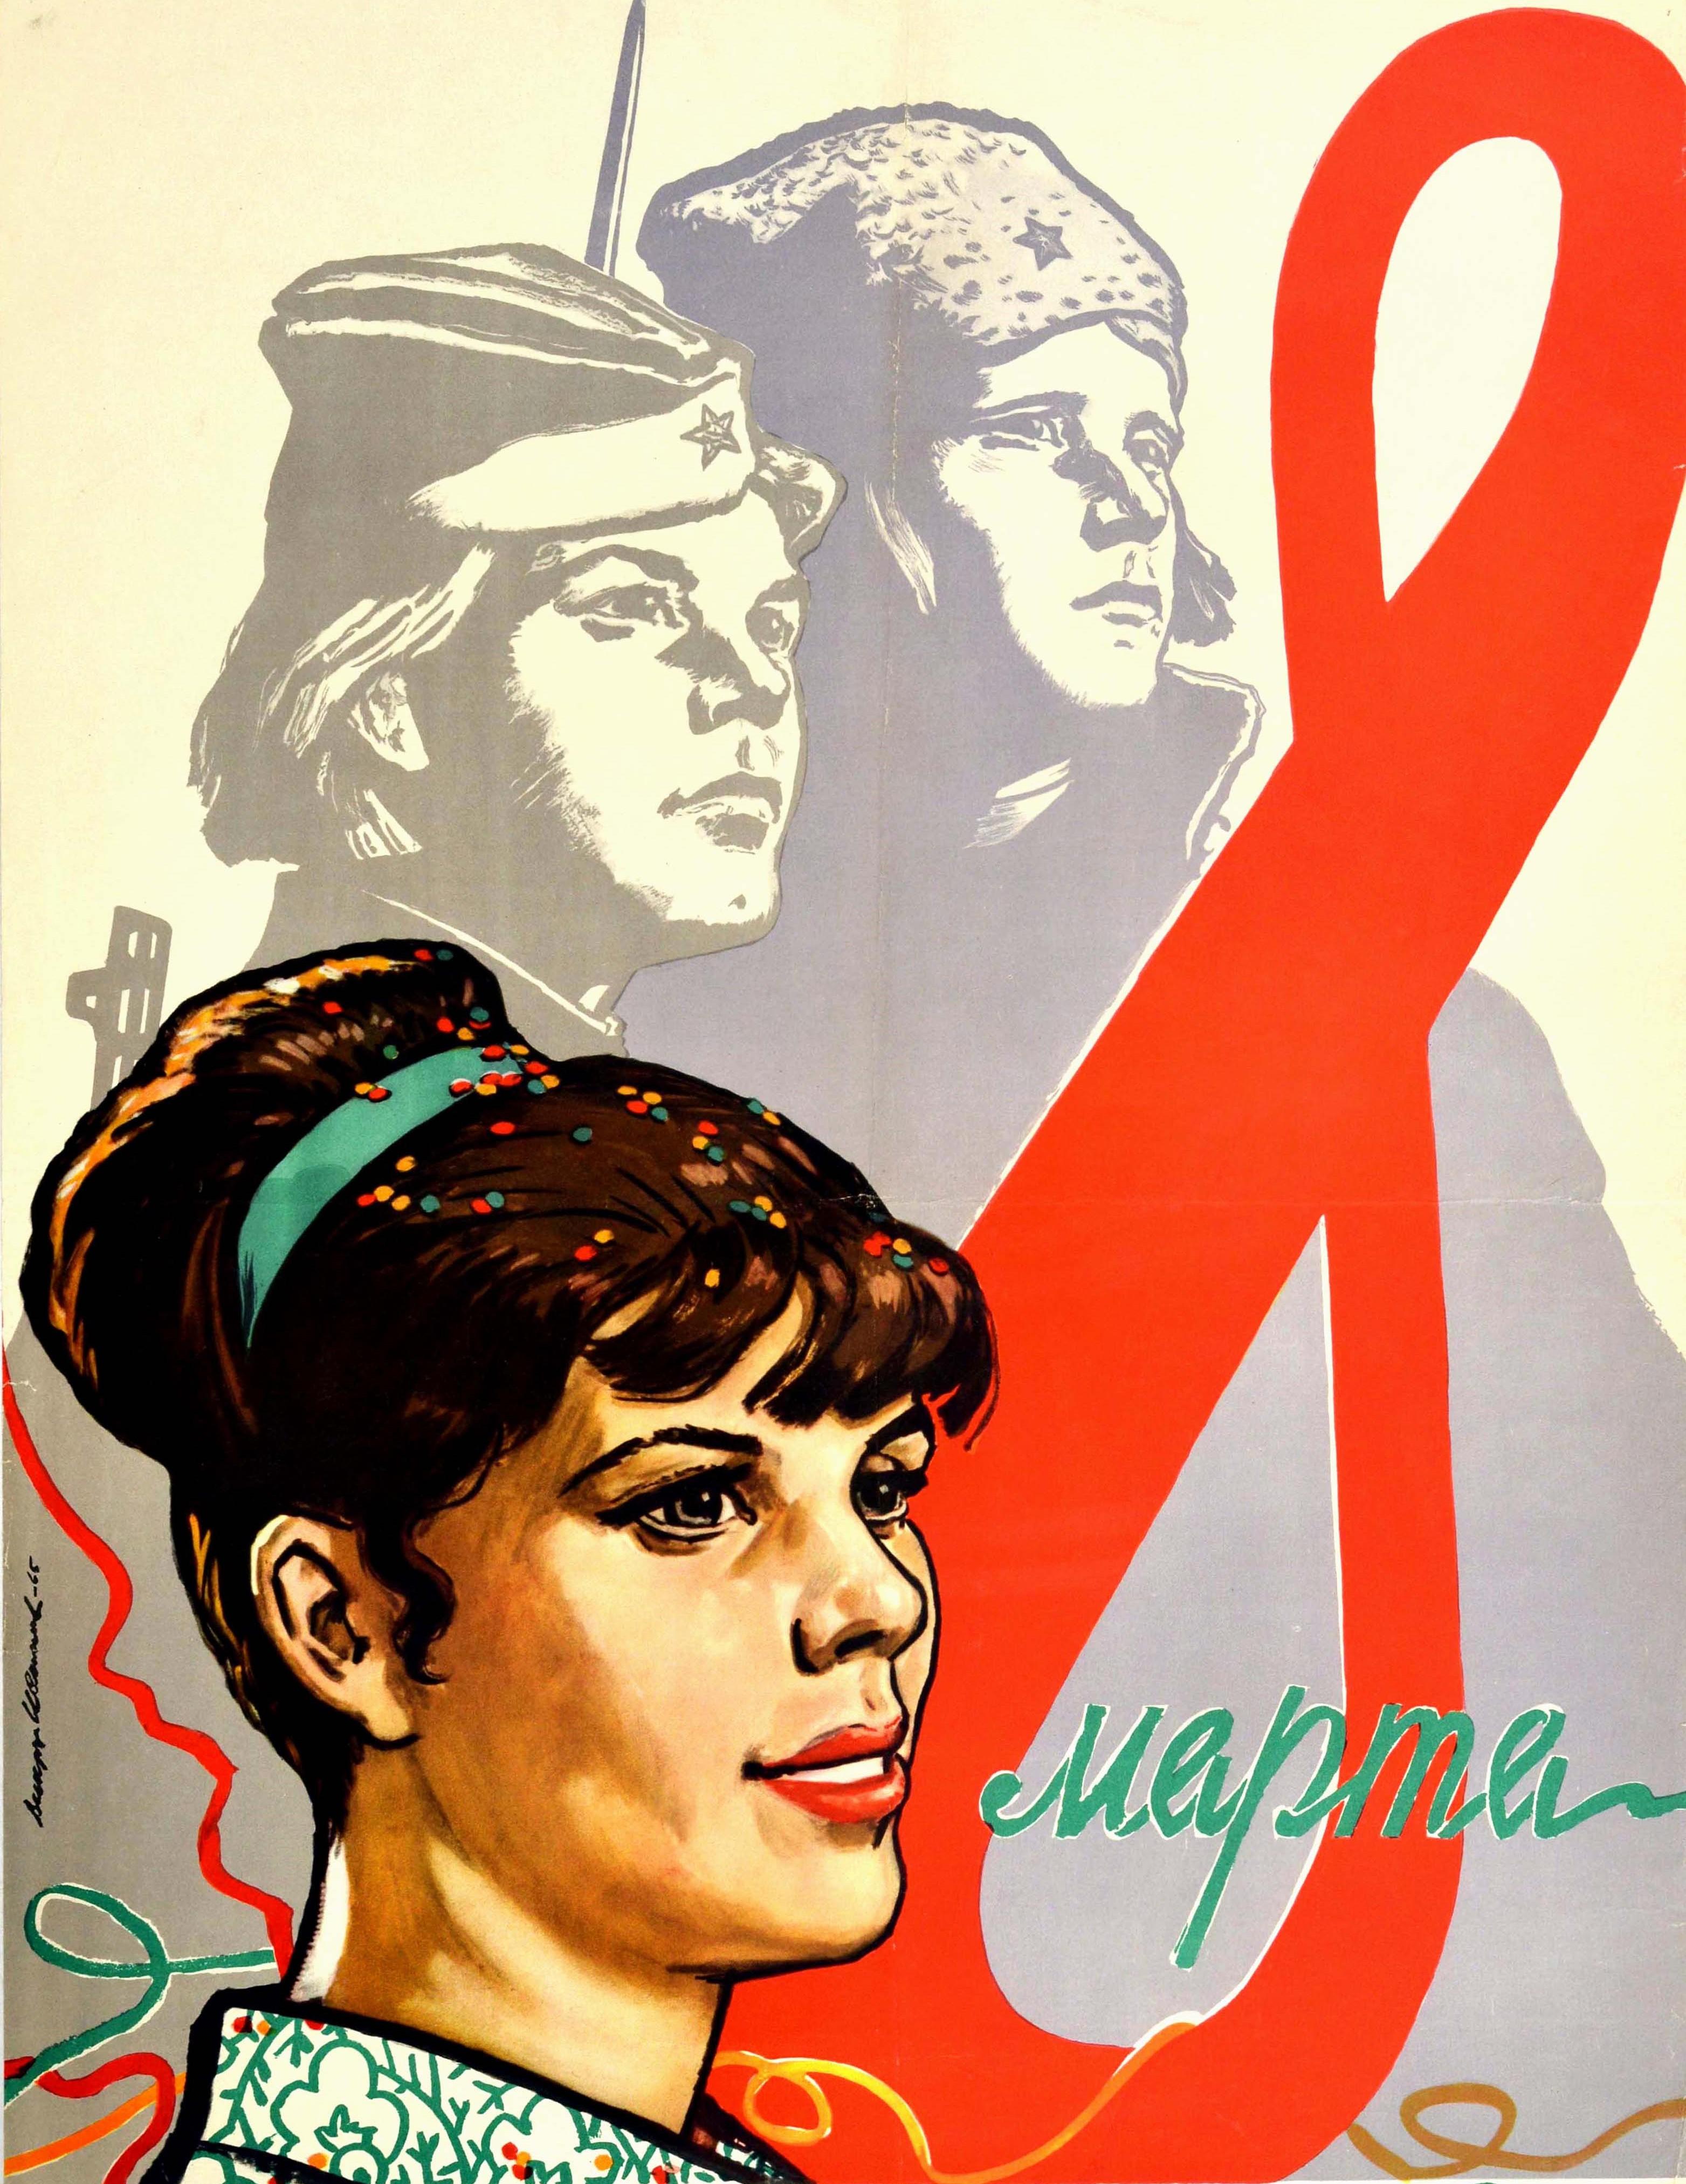 Affiche soviétique originale d'époque célébrant la Journée internationale de la femme le 8 mars - Gloire aux femmes ! - représentant une femme avec des confettis colorés dans les cheveux devant un grand chiffre huit rouge et le mot Marta / March